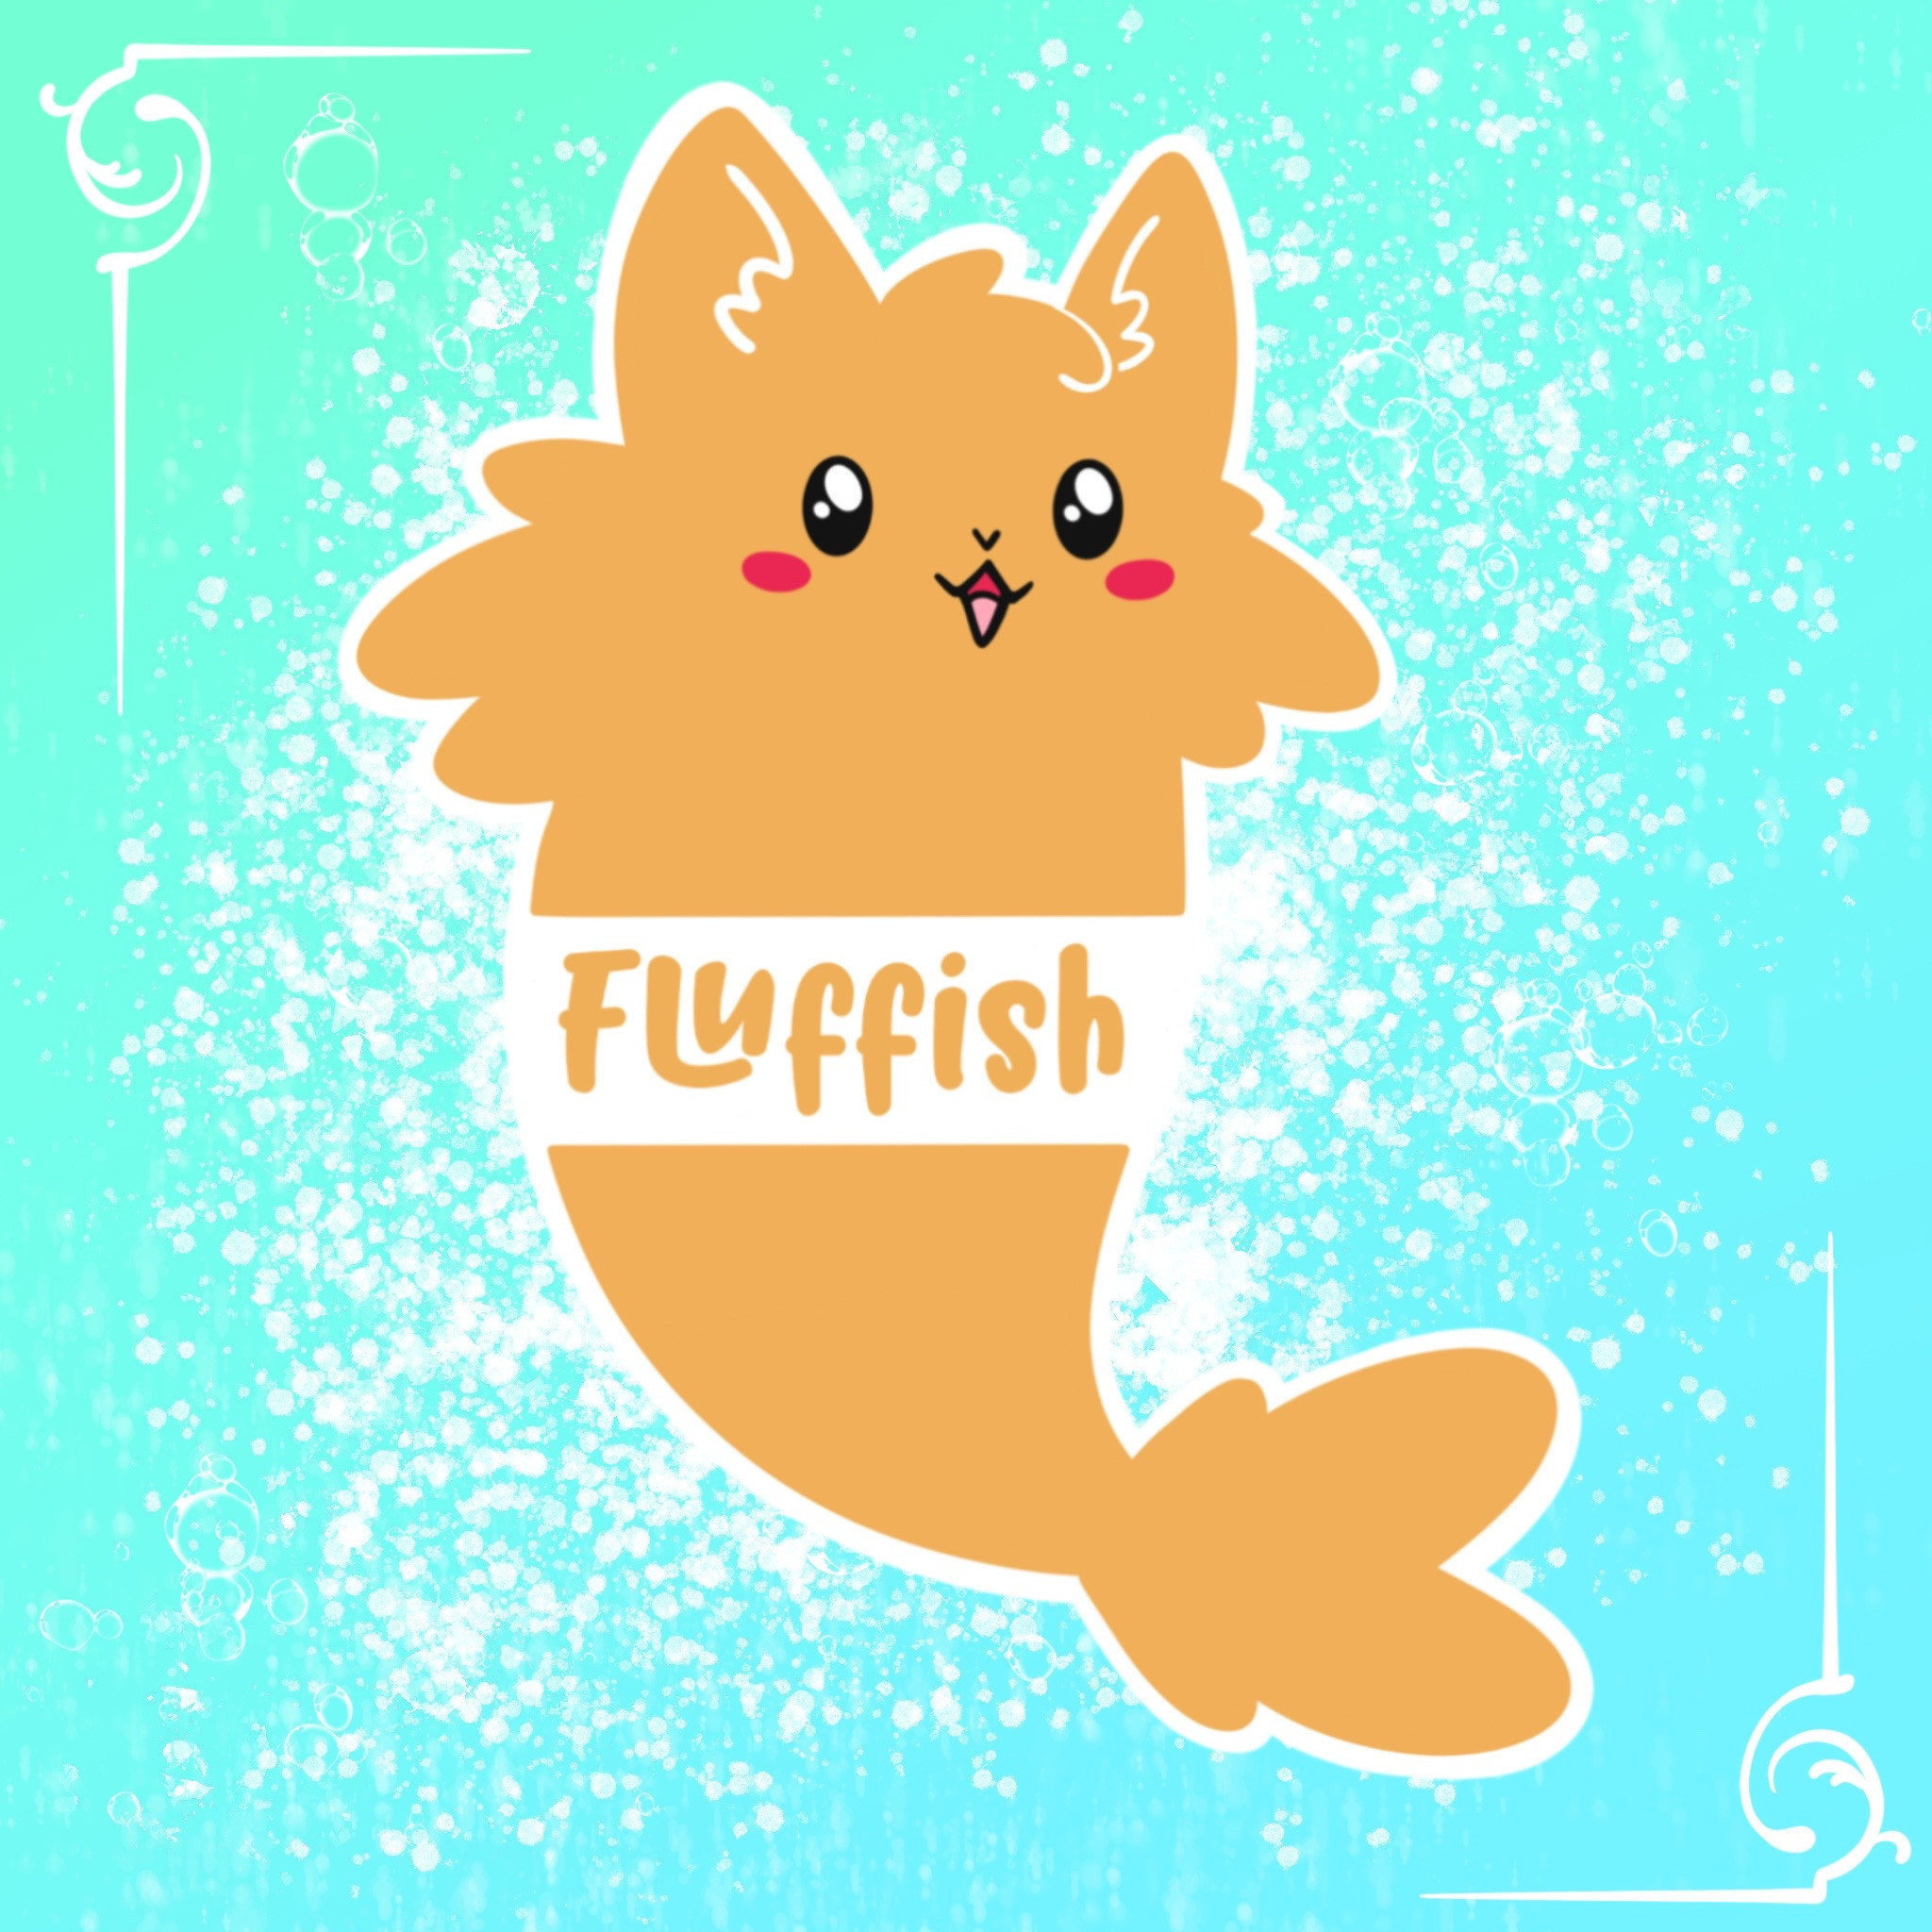 Fluffish